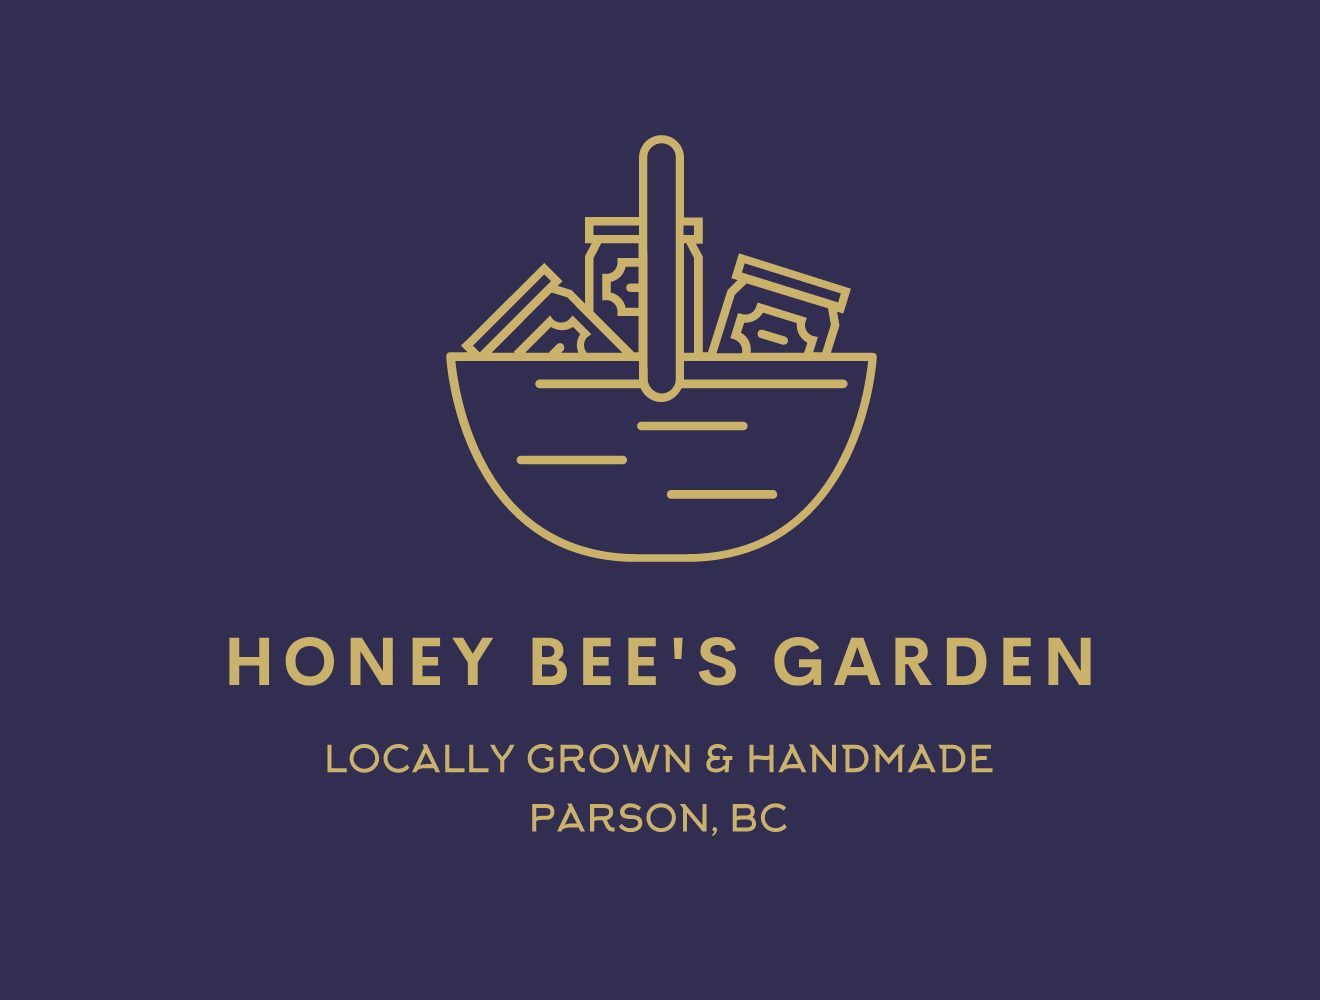 Honey Bee’s Garden